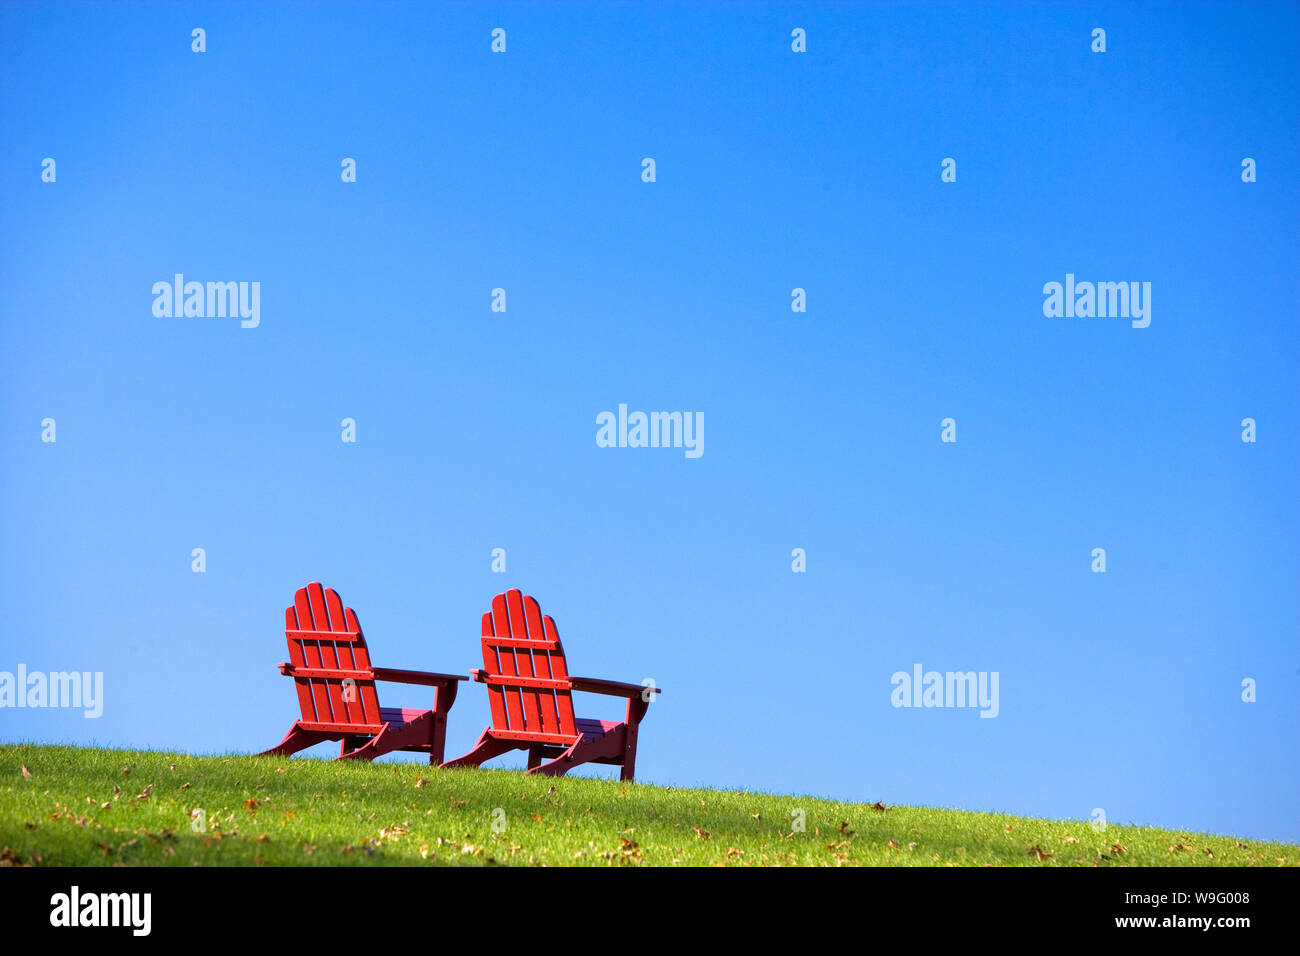 Classique en bois rouge de style Adirondack chaises sont assis sur une colline d'herbe verte. Plan horizontal. Banque D'Images